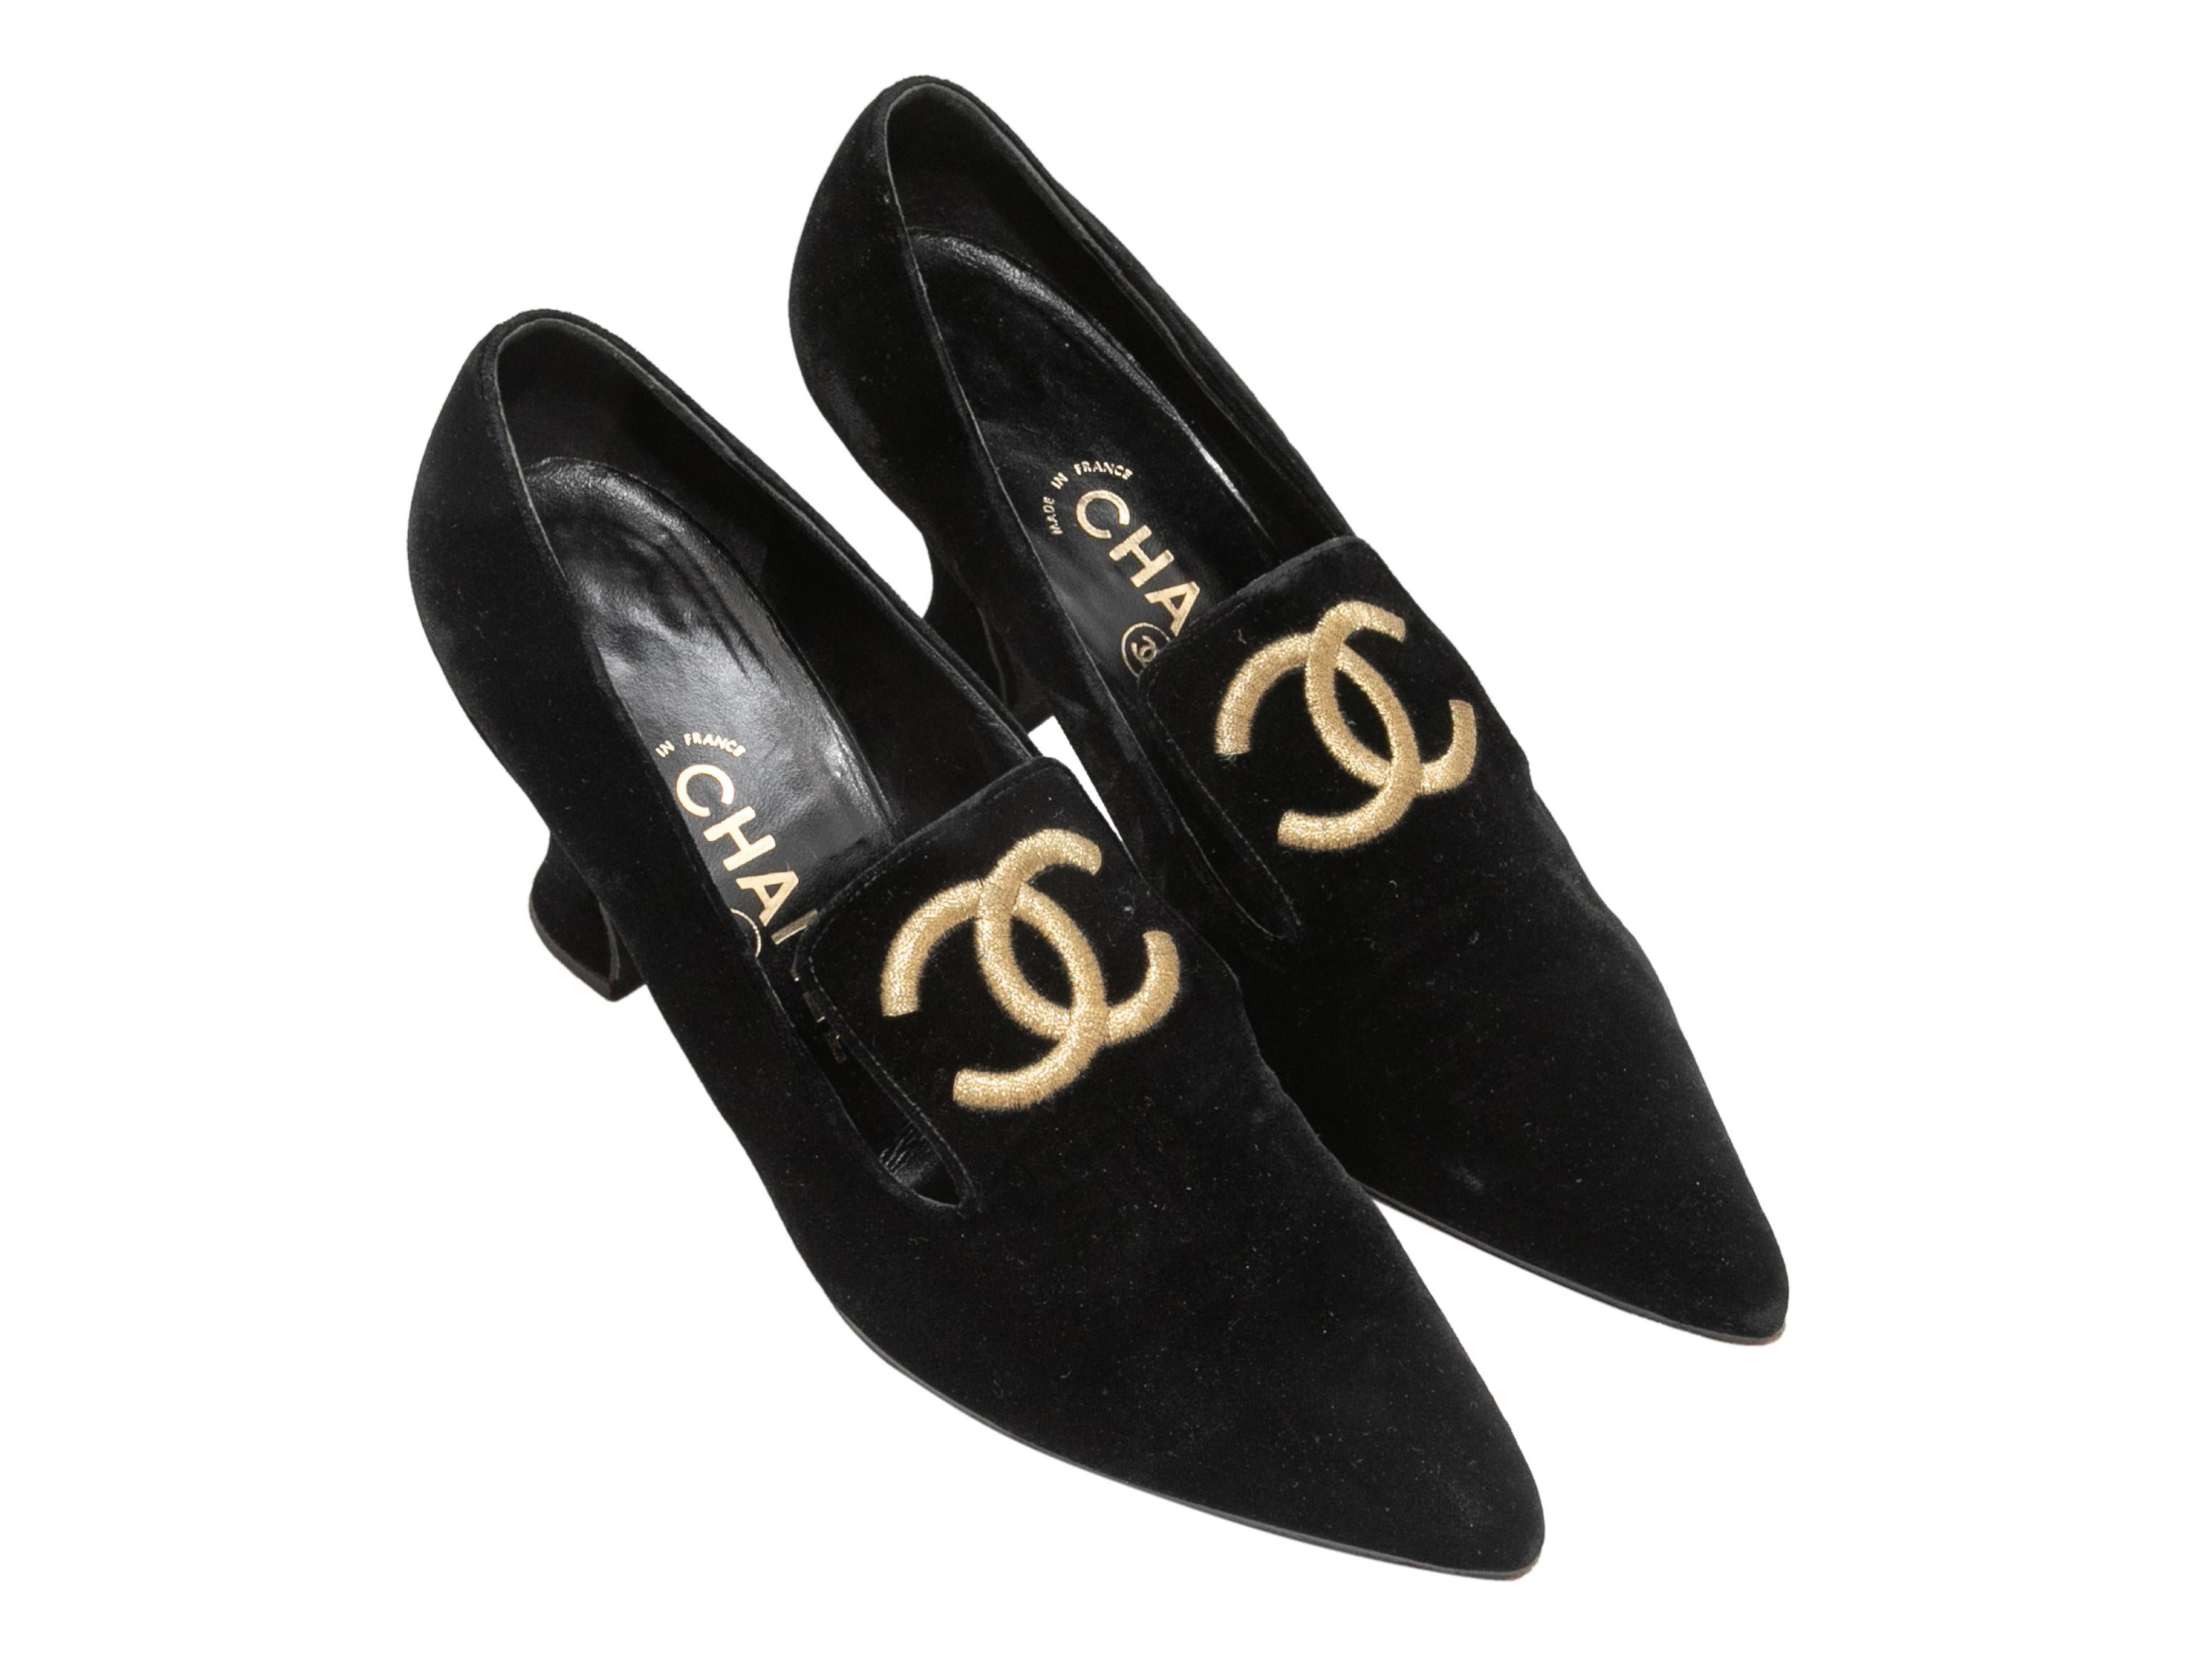 Schwarze spitze Samtpumps im Vintage-Stil von Chanel. Aufgestickte goldene CC-Logos an den Oberteilen. Kitten Fersen. 3